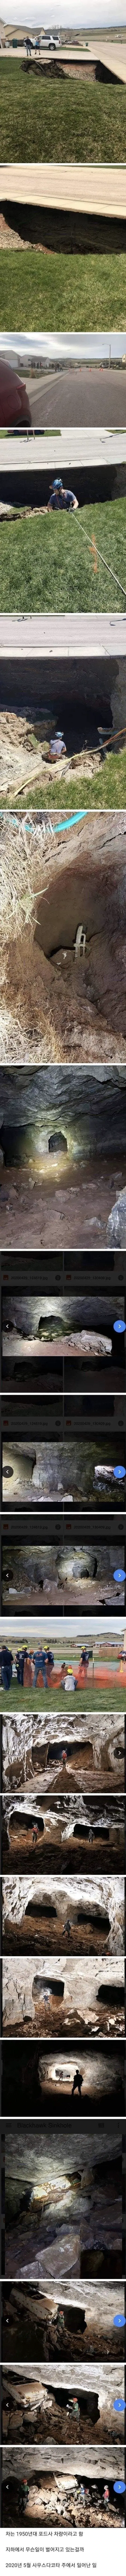 미국 싱크홀로 발견된 동굴 | mbong.kr 엠봉